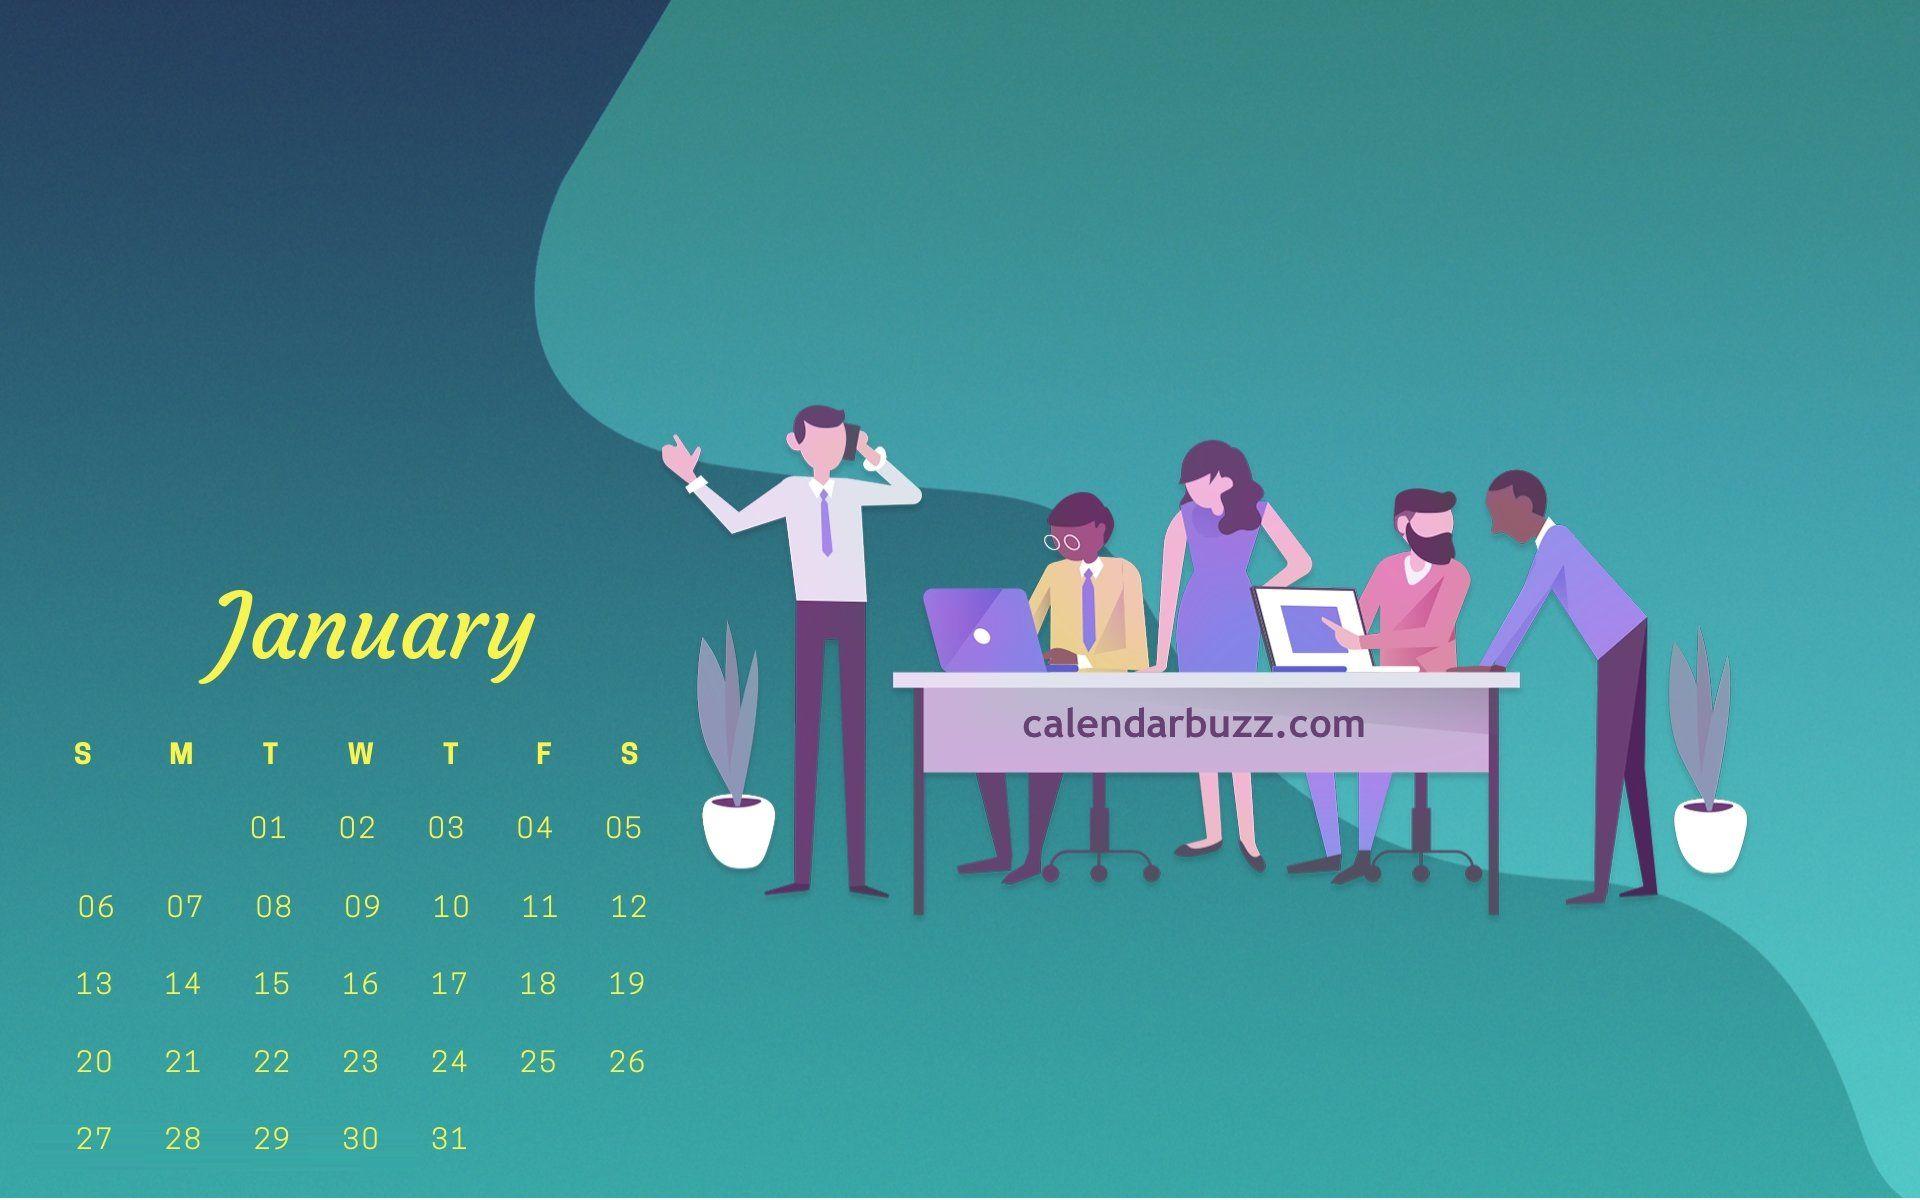 Free January 2019 Calendar Wallpaper Download